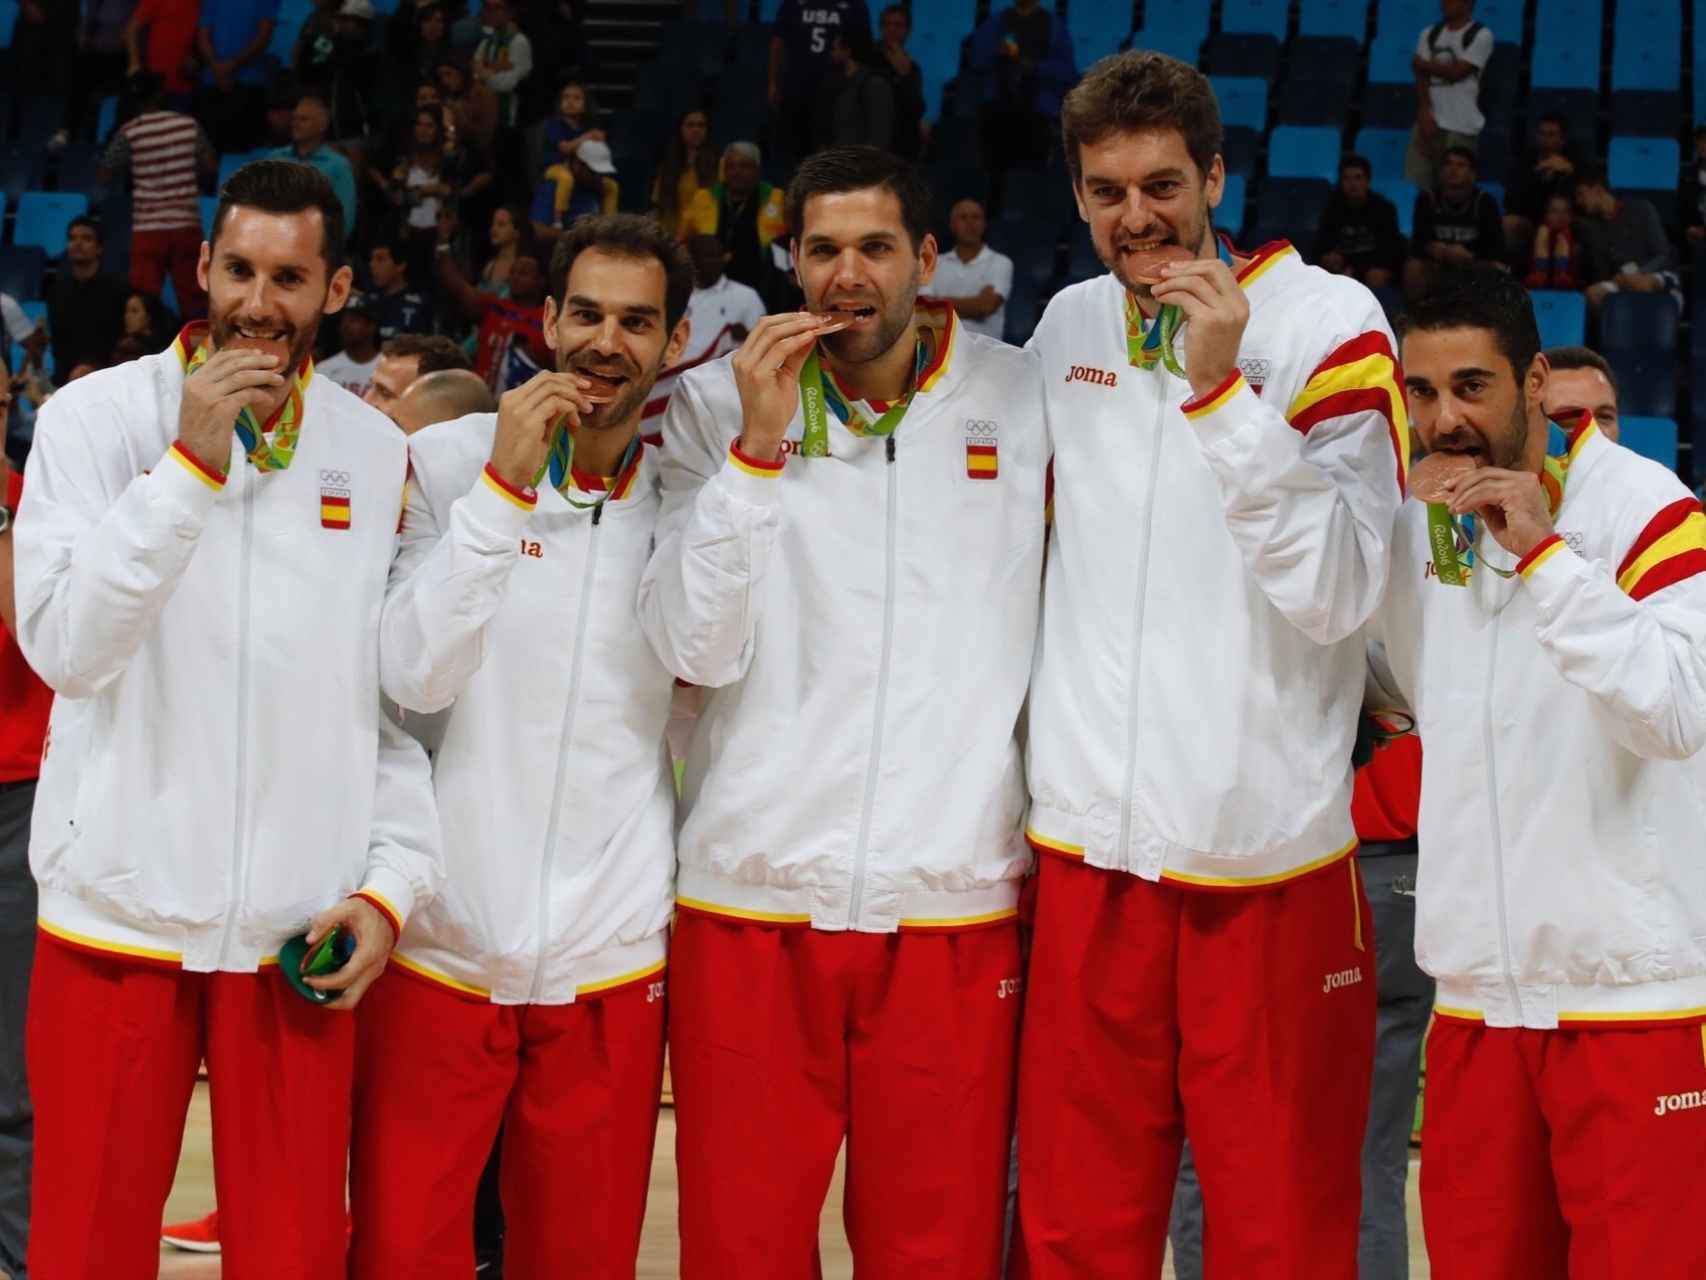 Rudy, Calderón, Reyes, Gasol y Navarro con el bronce.